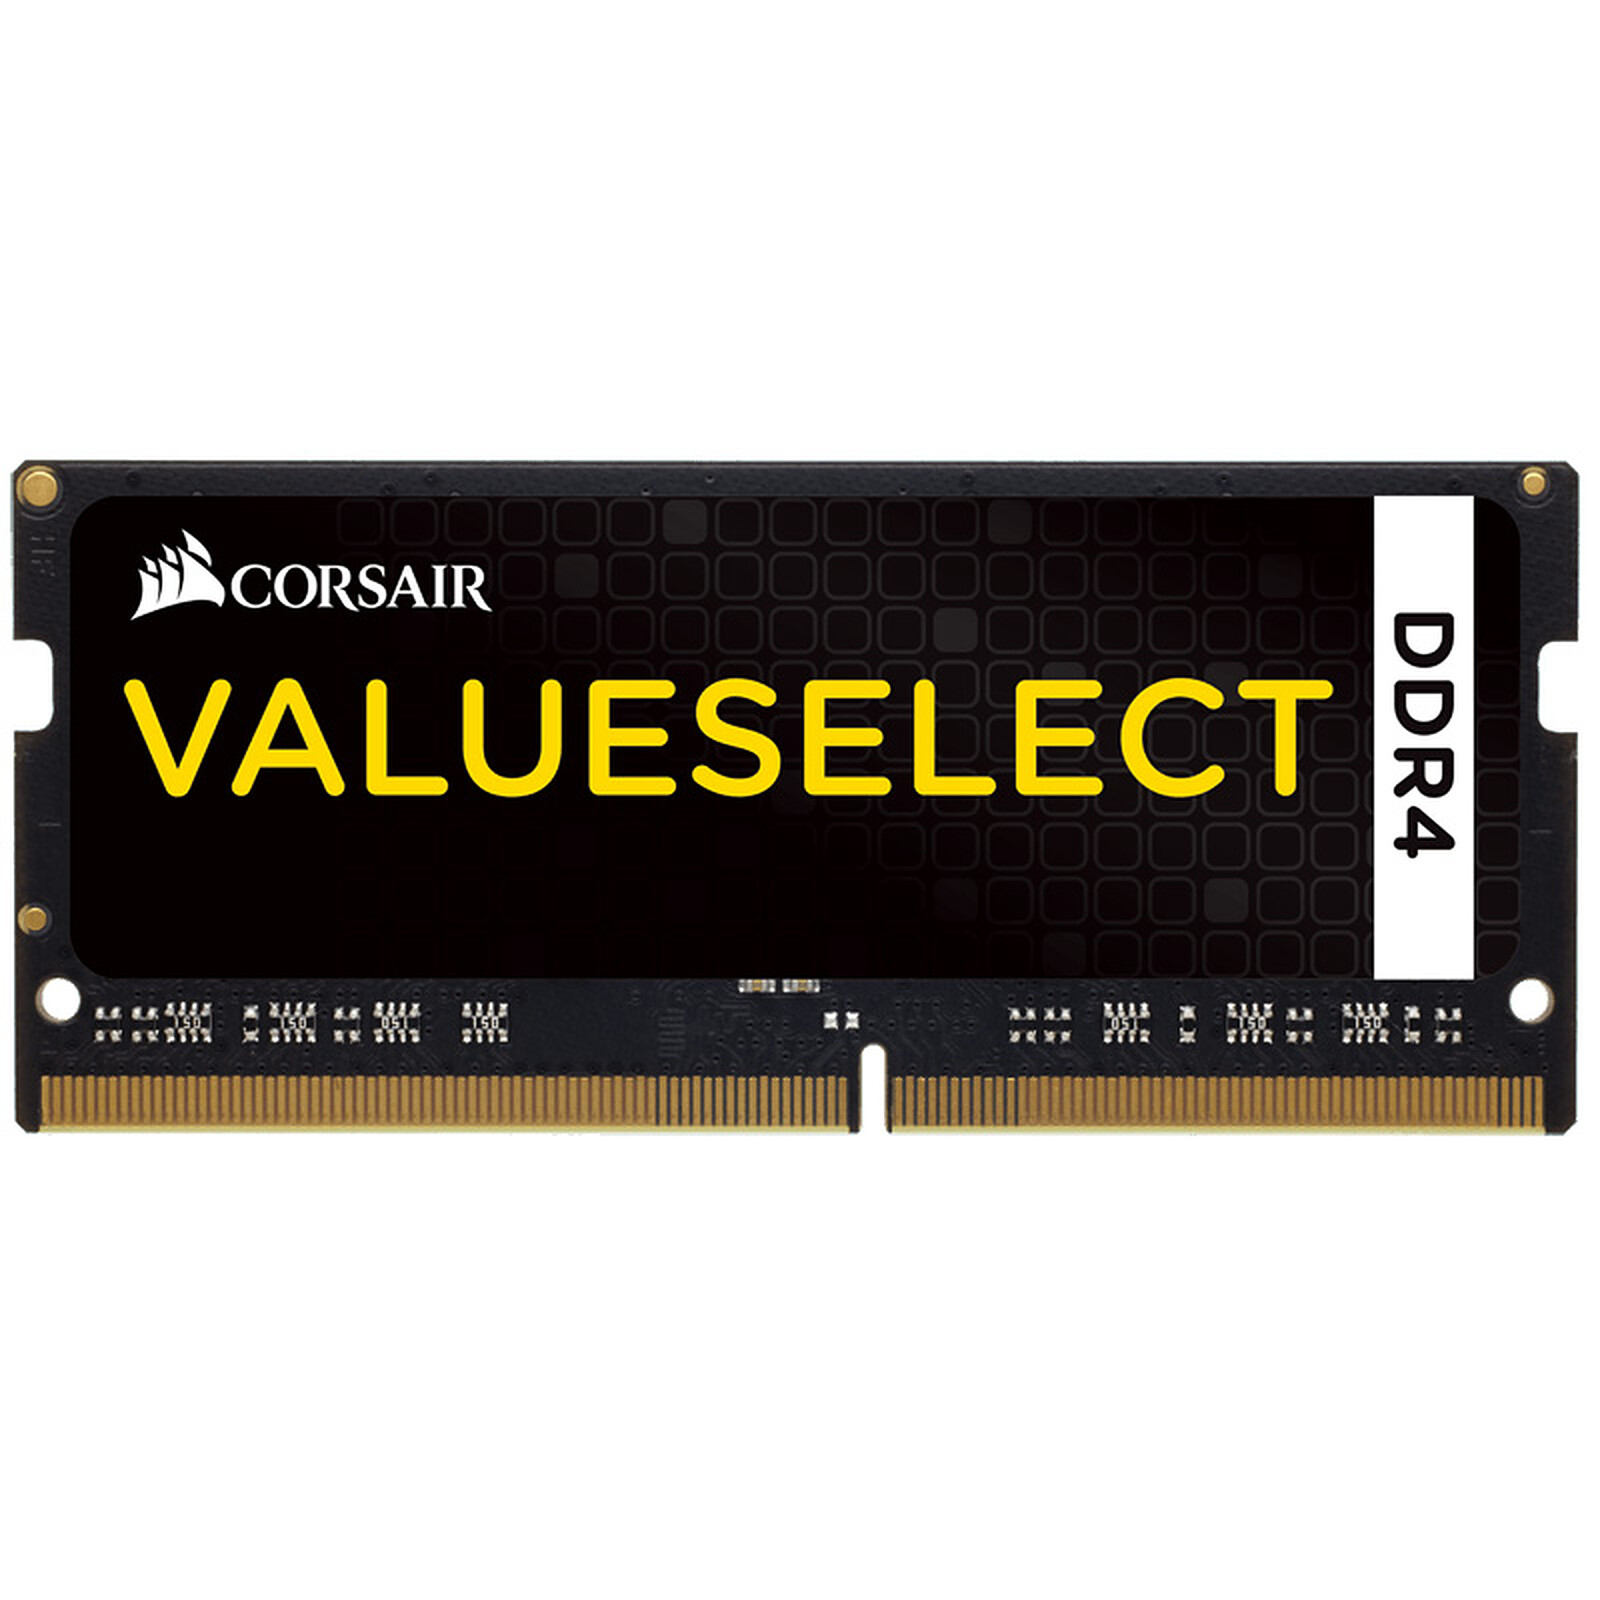 Corsair Value Select 8Go (1x8Go) DDR3 1600MHz - Mémoire PC Corsair sur